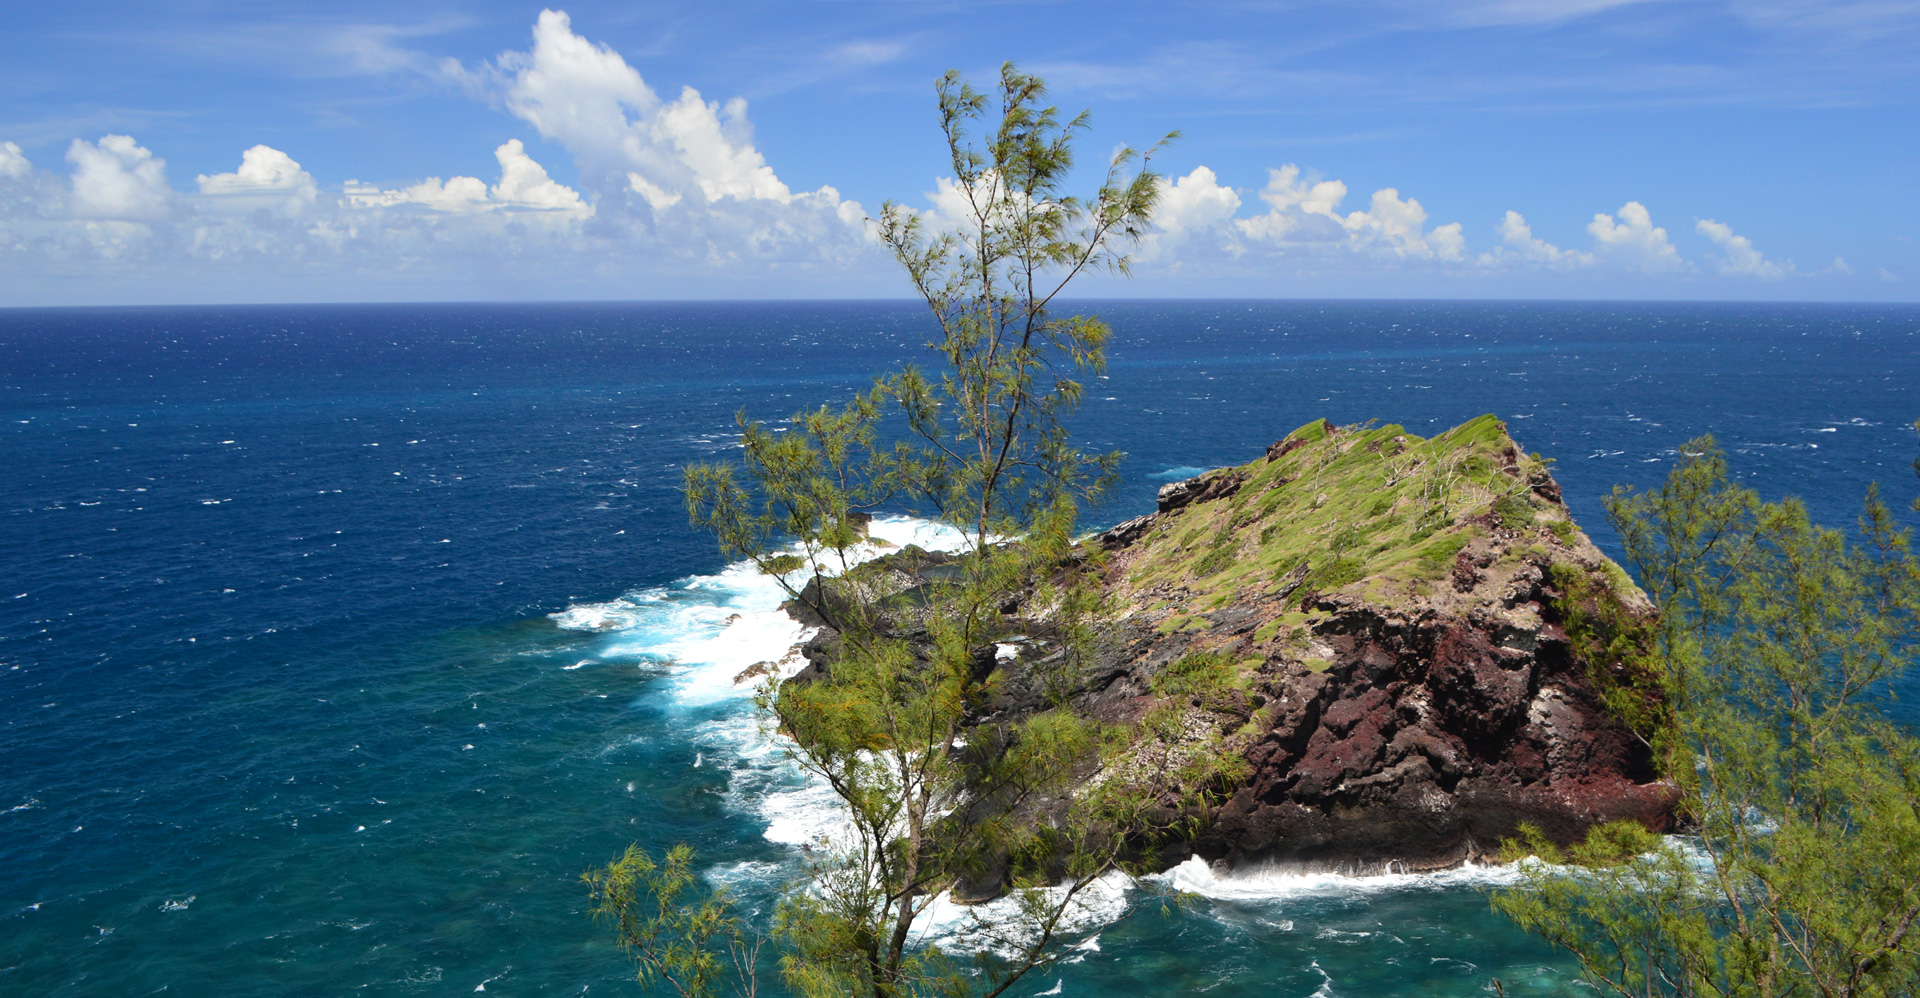 Visiter Petite-Île : préparez votre séjour et voyage Petite-Île